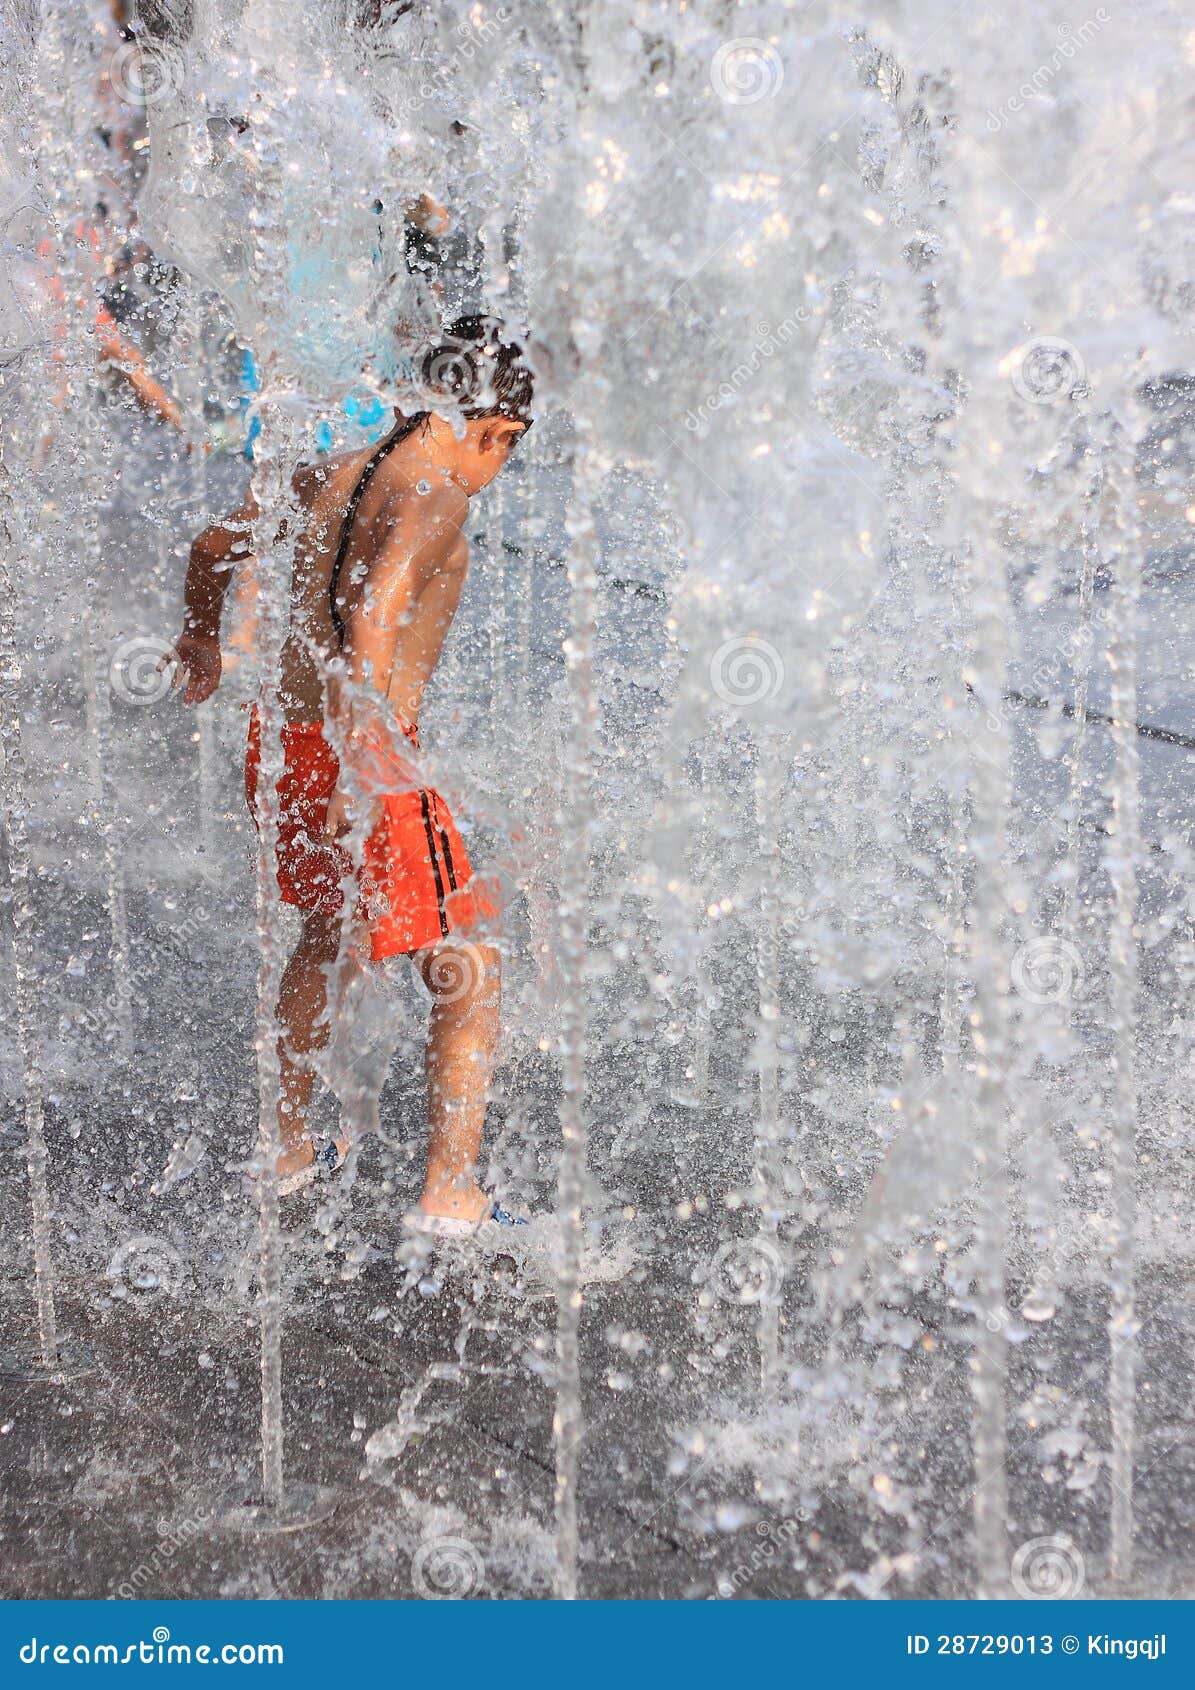 Bambini che giocano in fontane alla sosta, Shenzhen, porcellana